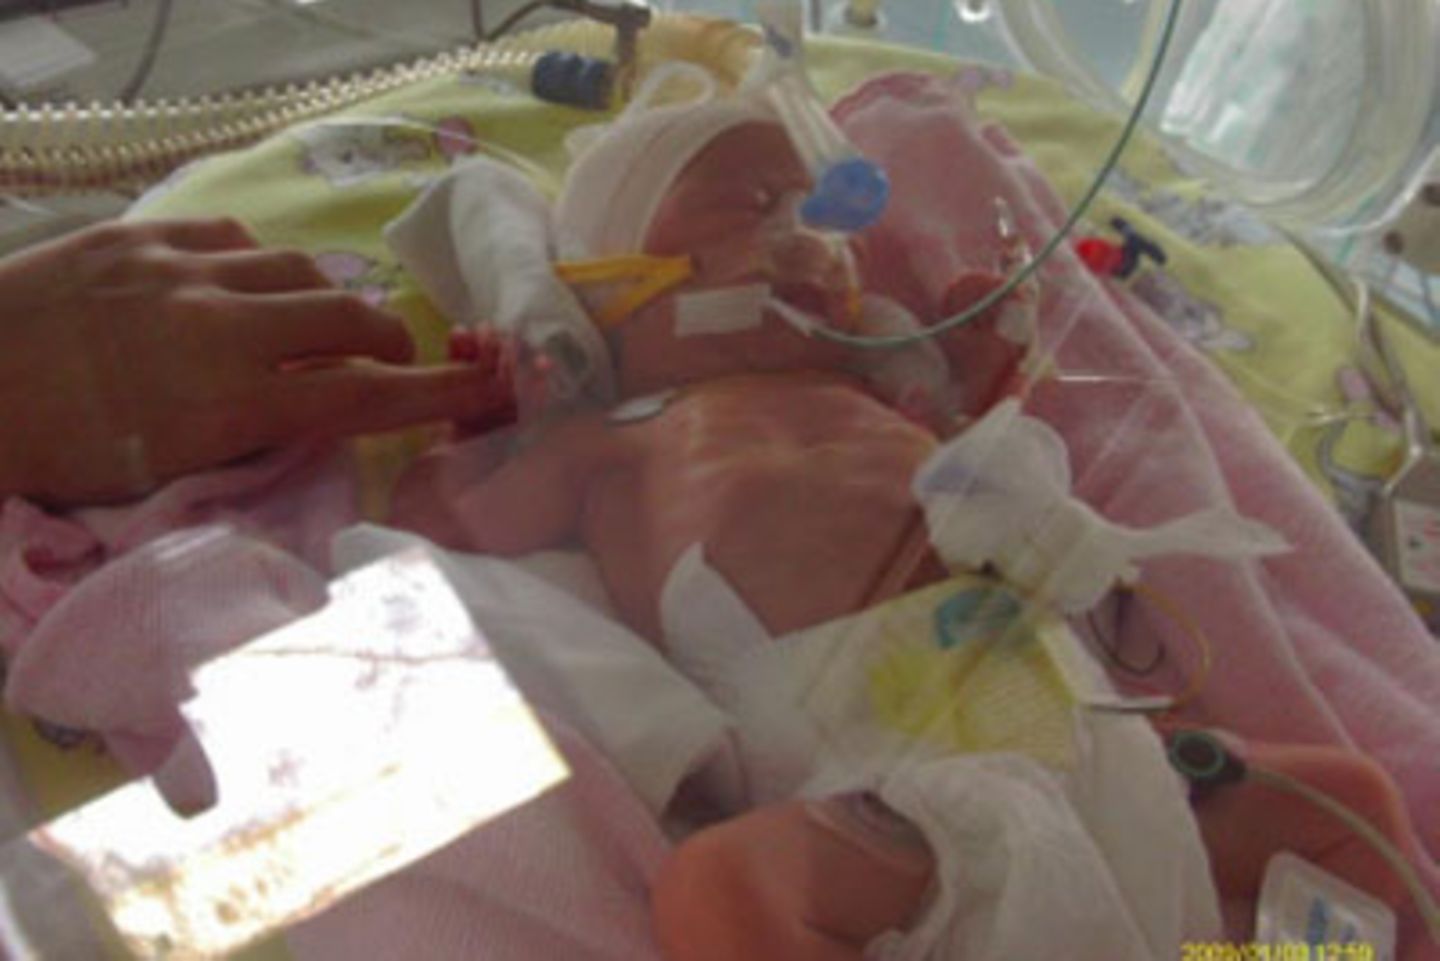 Alicia - 8 Wochen zu früh geboren